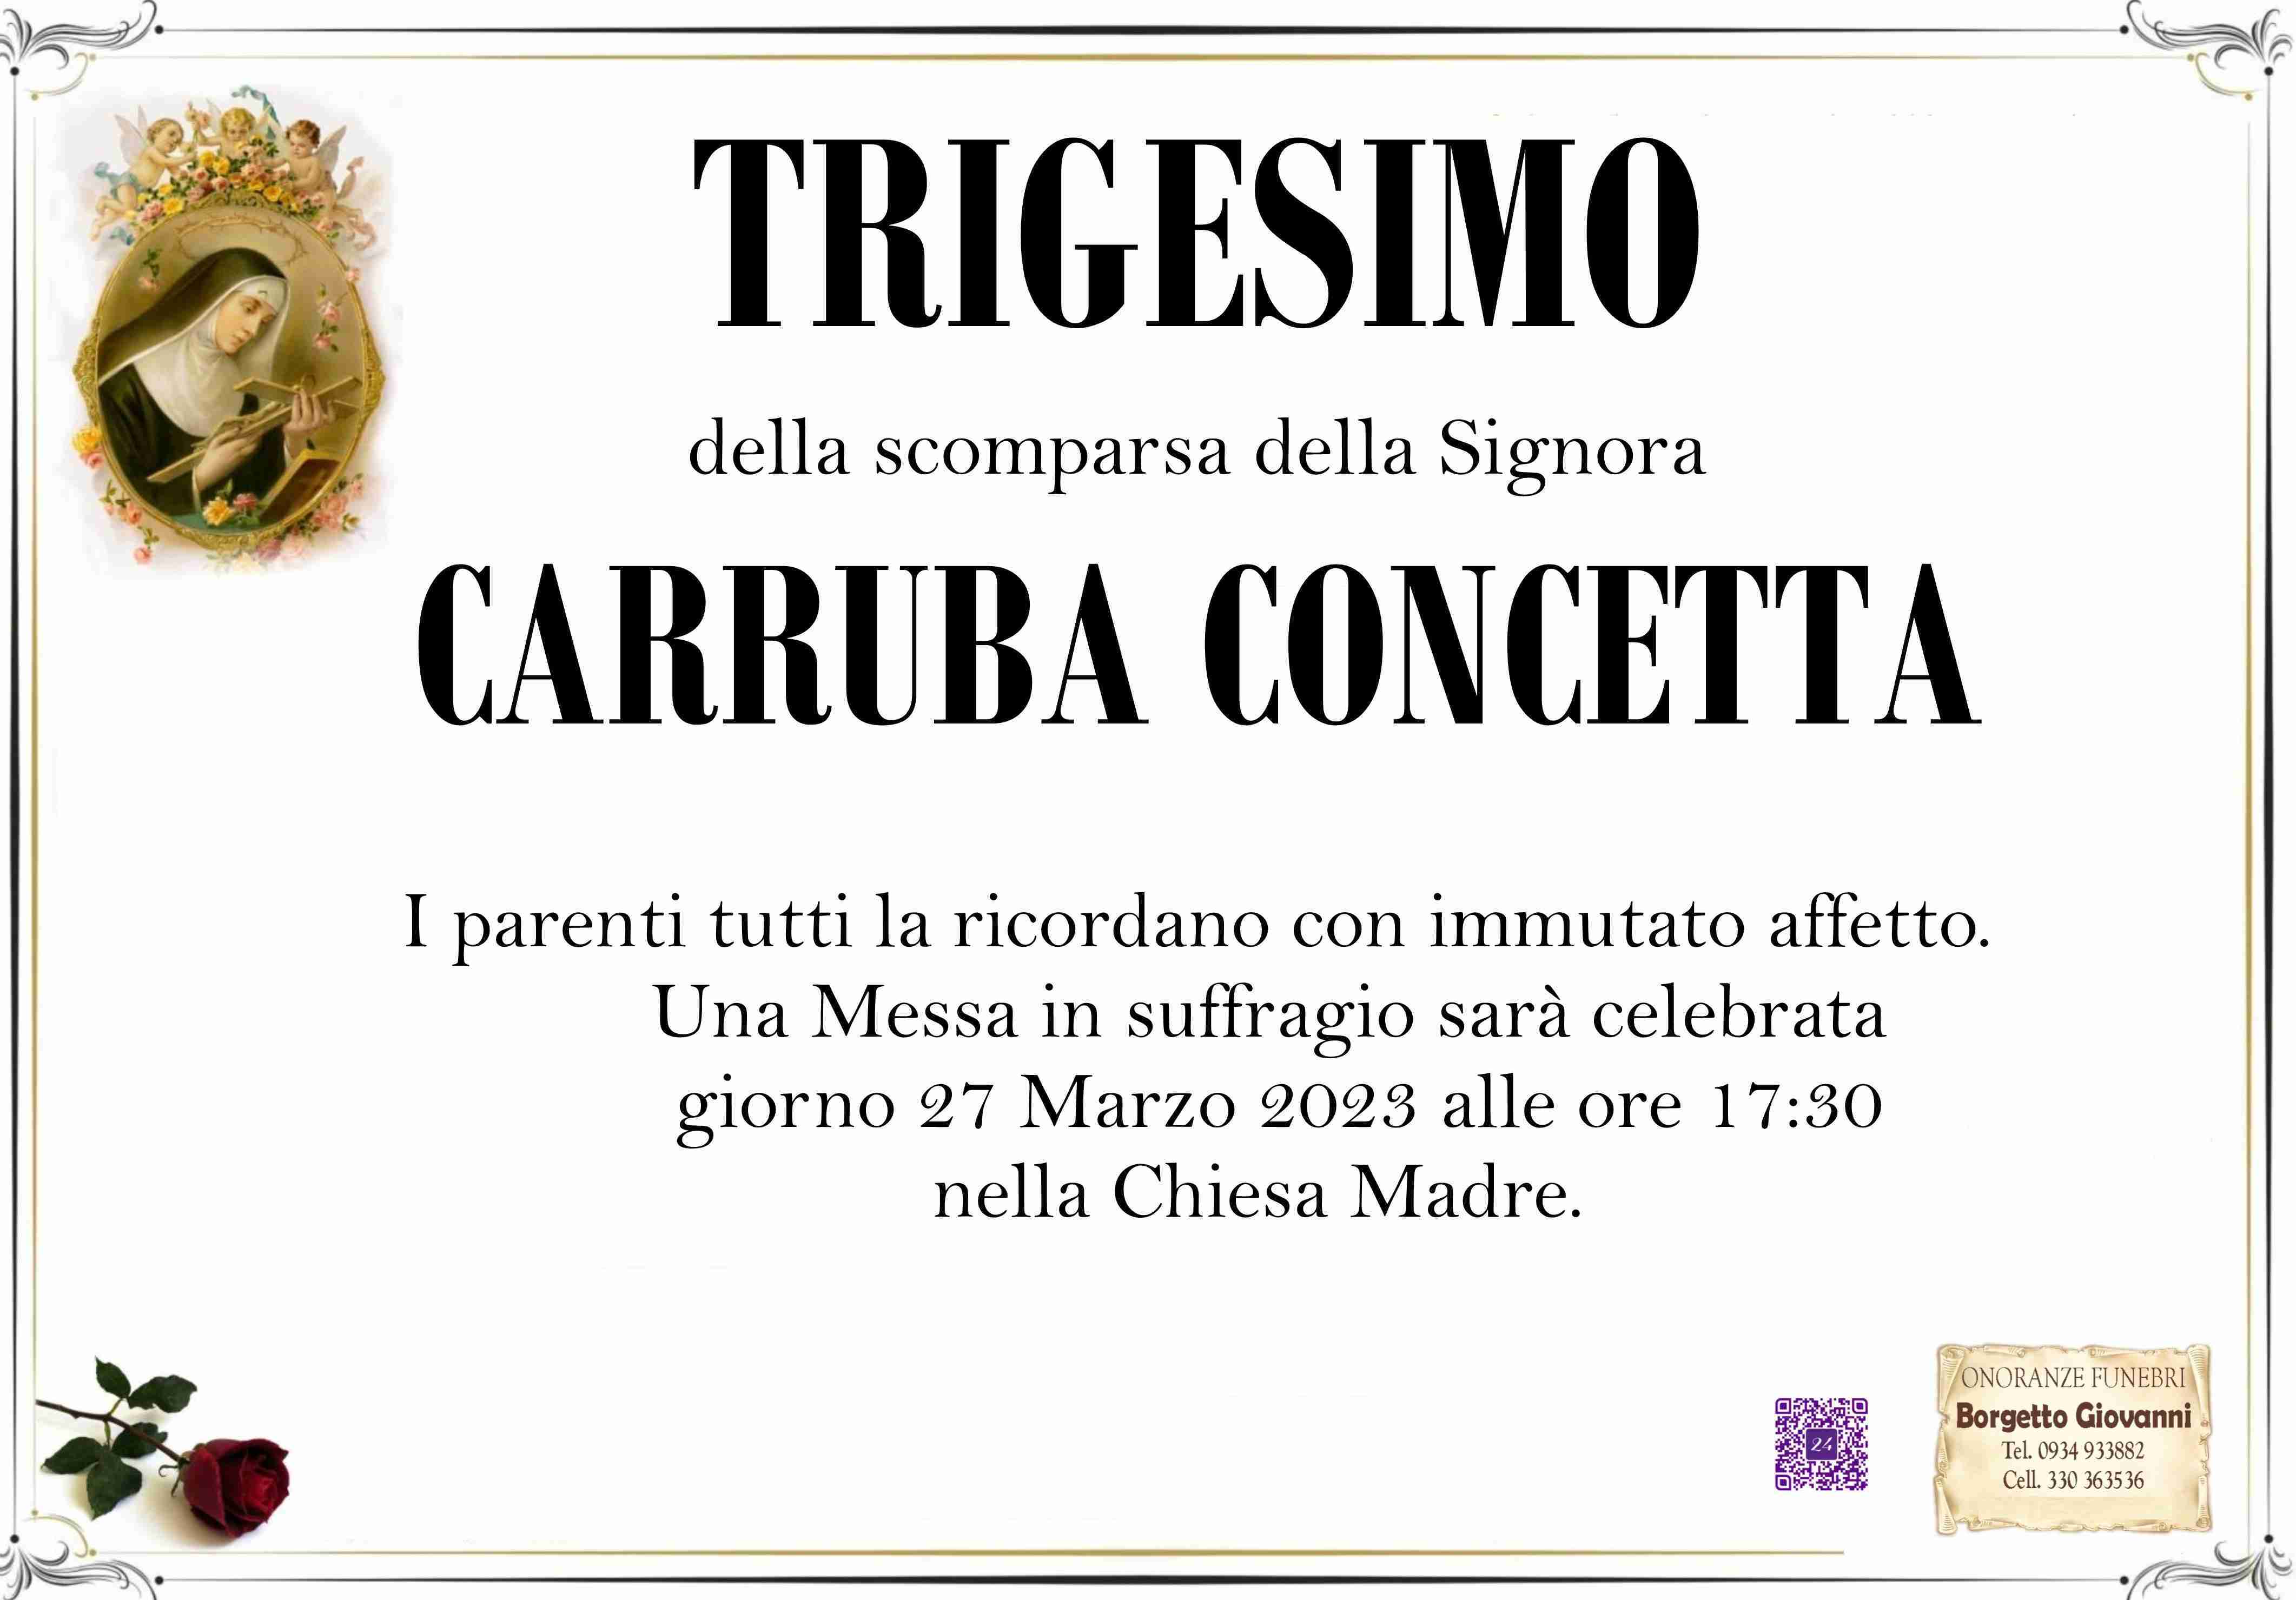 Concetta Carruba